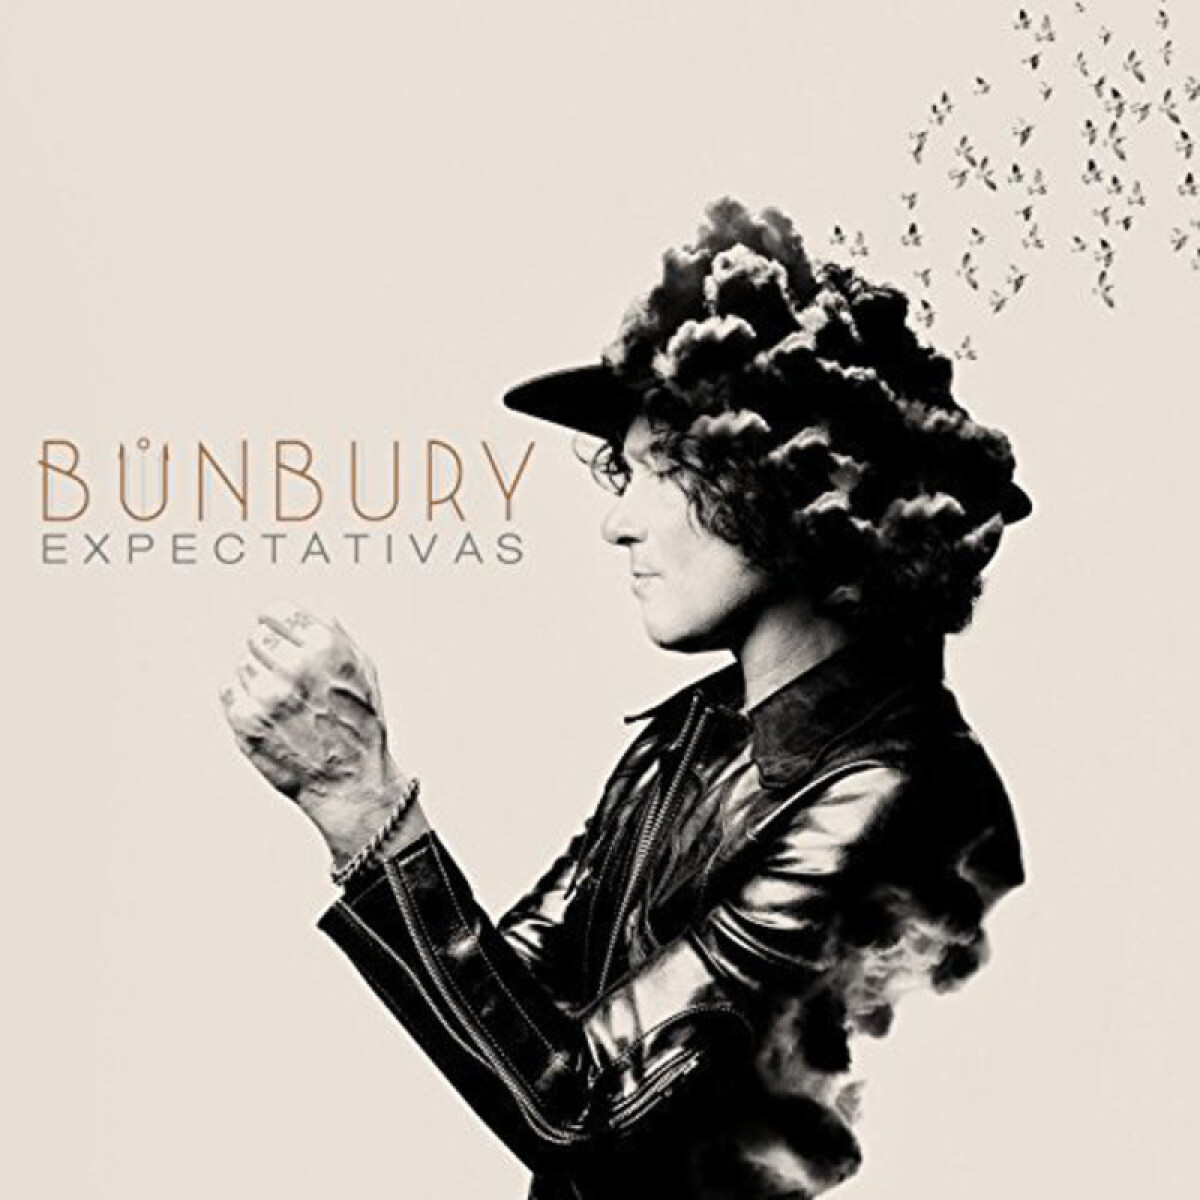 Bunbur - Expectativas - Vinilo 